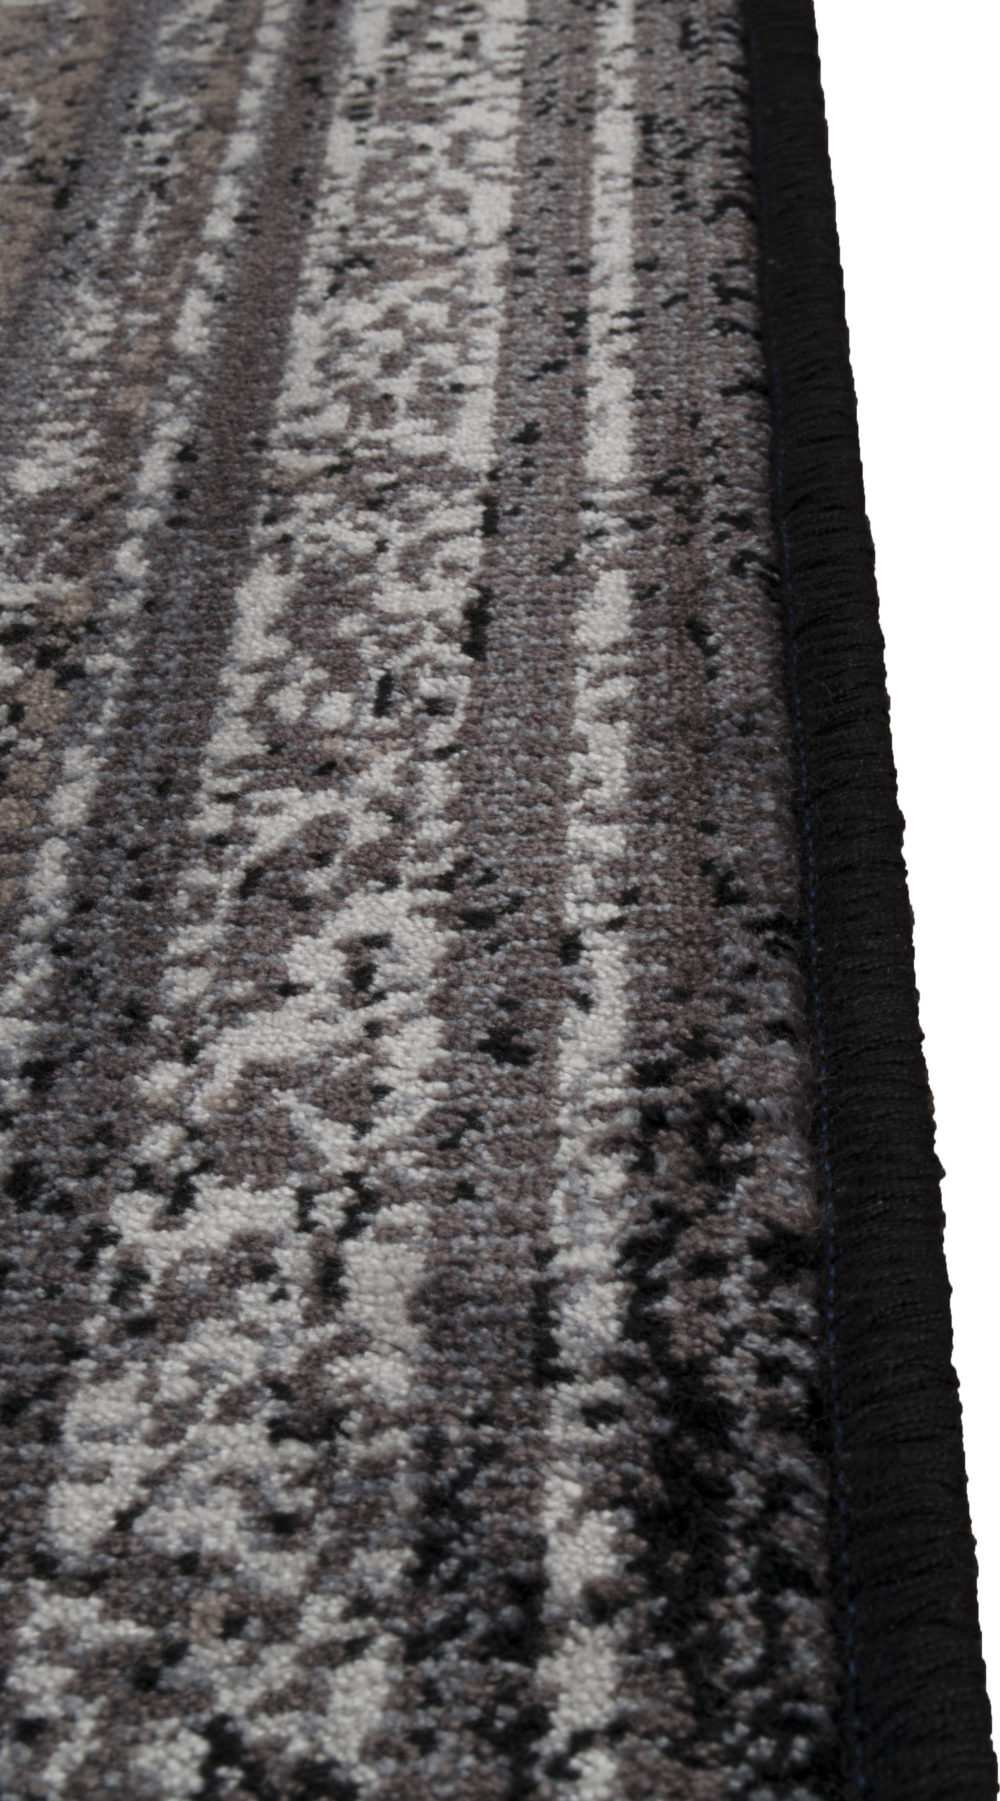 Snugg DutchBone Rugged carpet 200x300 dark